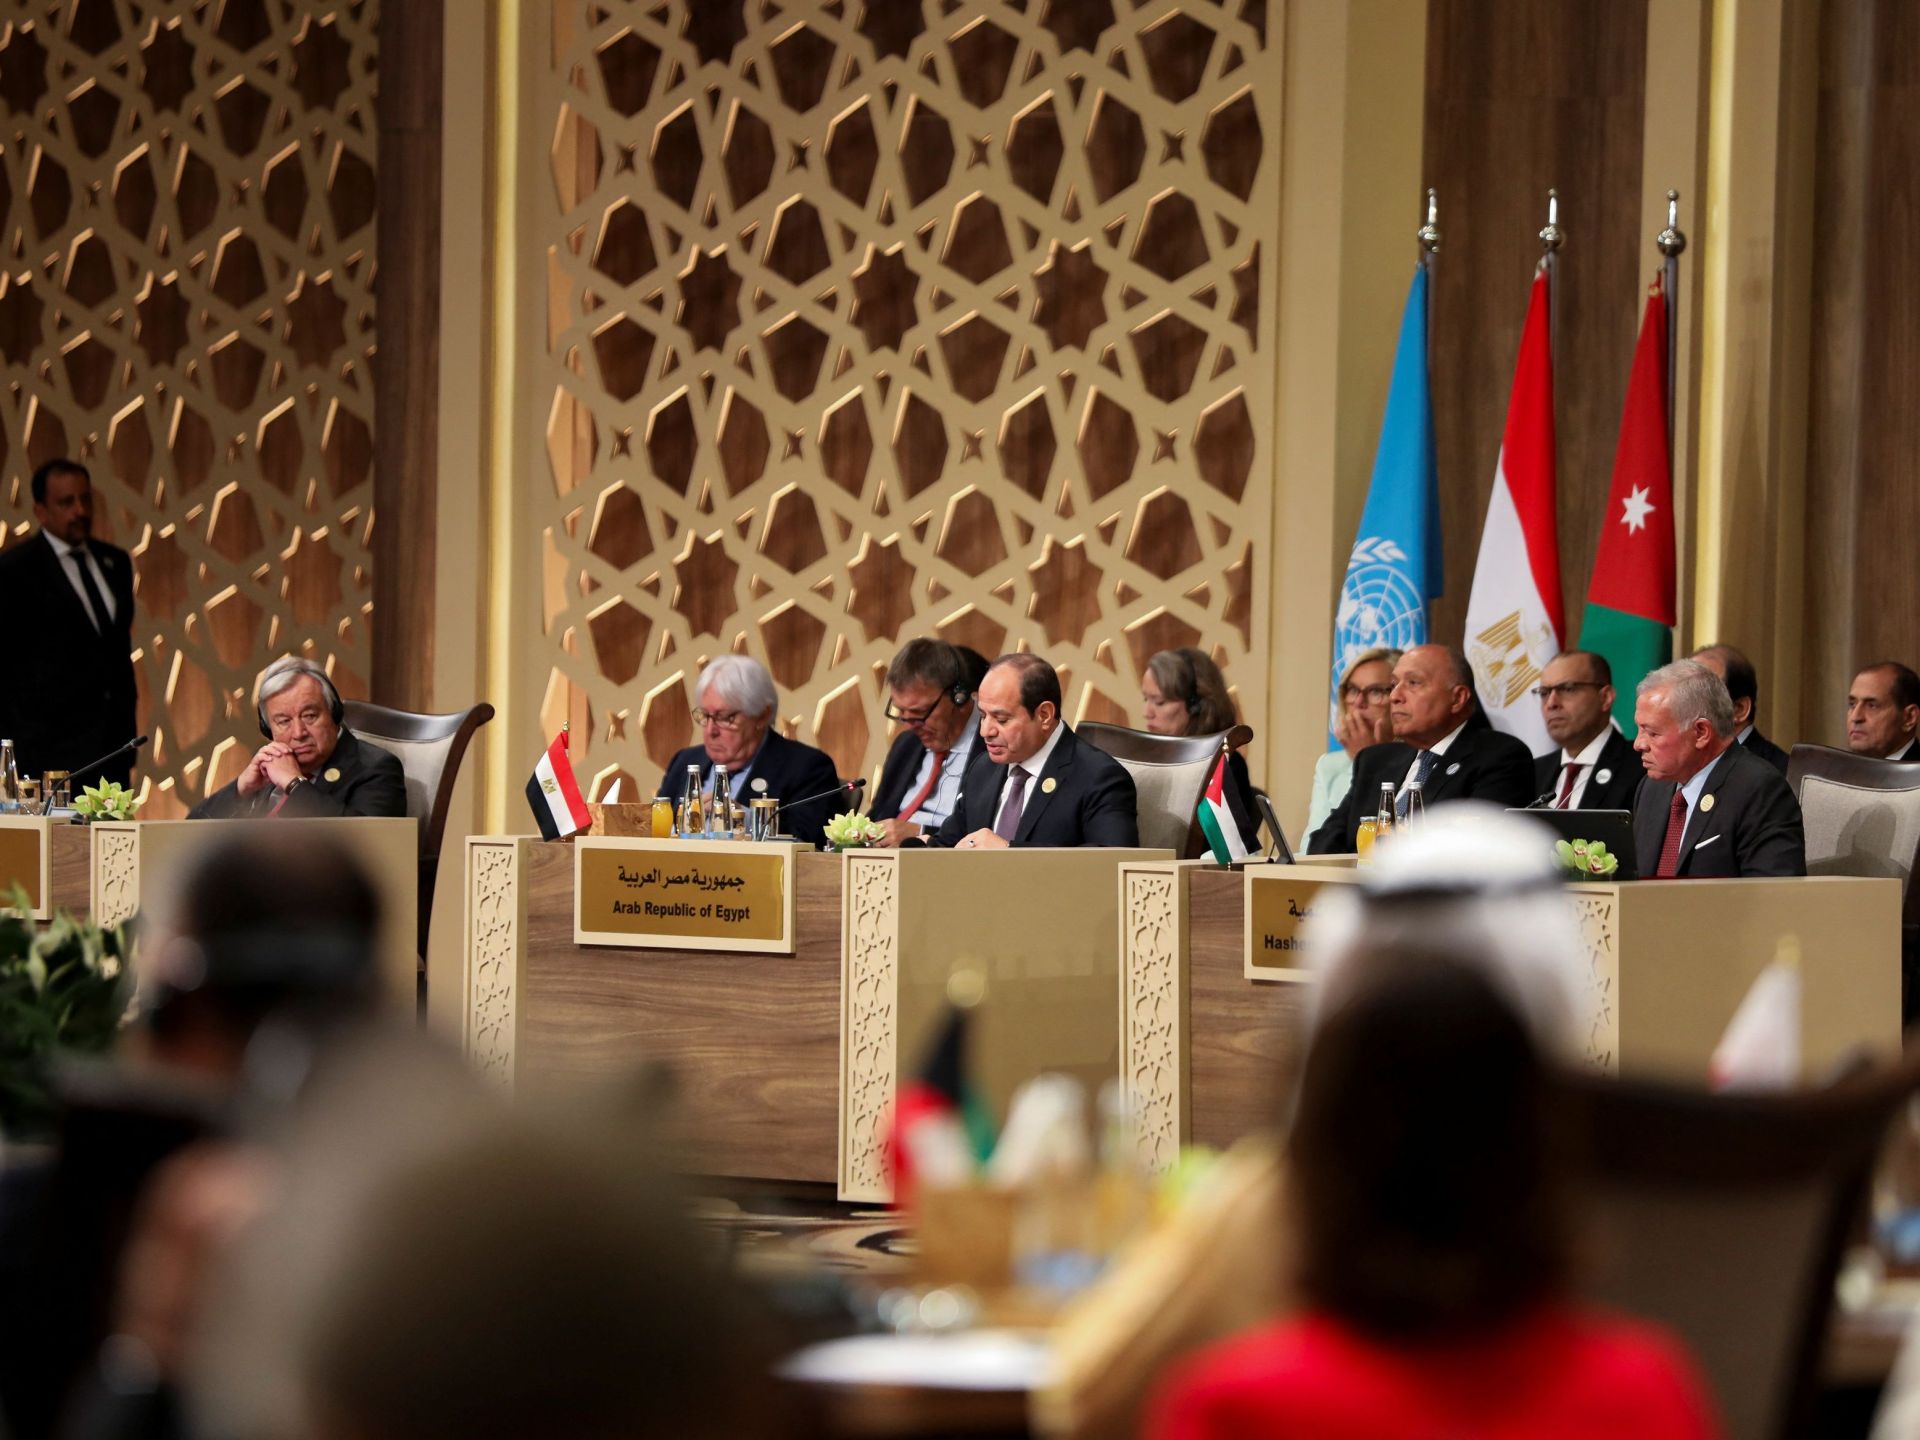 مؤتمر الأردن يختتم أعماله بإدانة القتل والتهجير بقطاع غزة | أخبار – البوكس نيوز